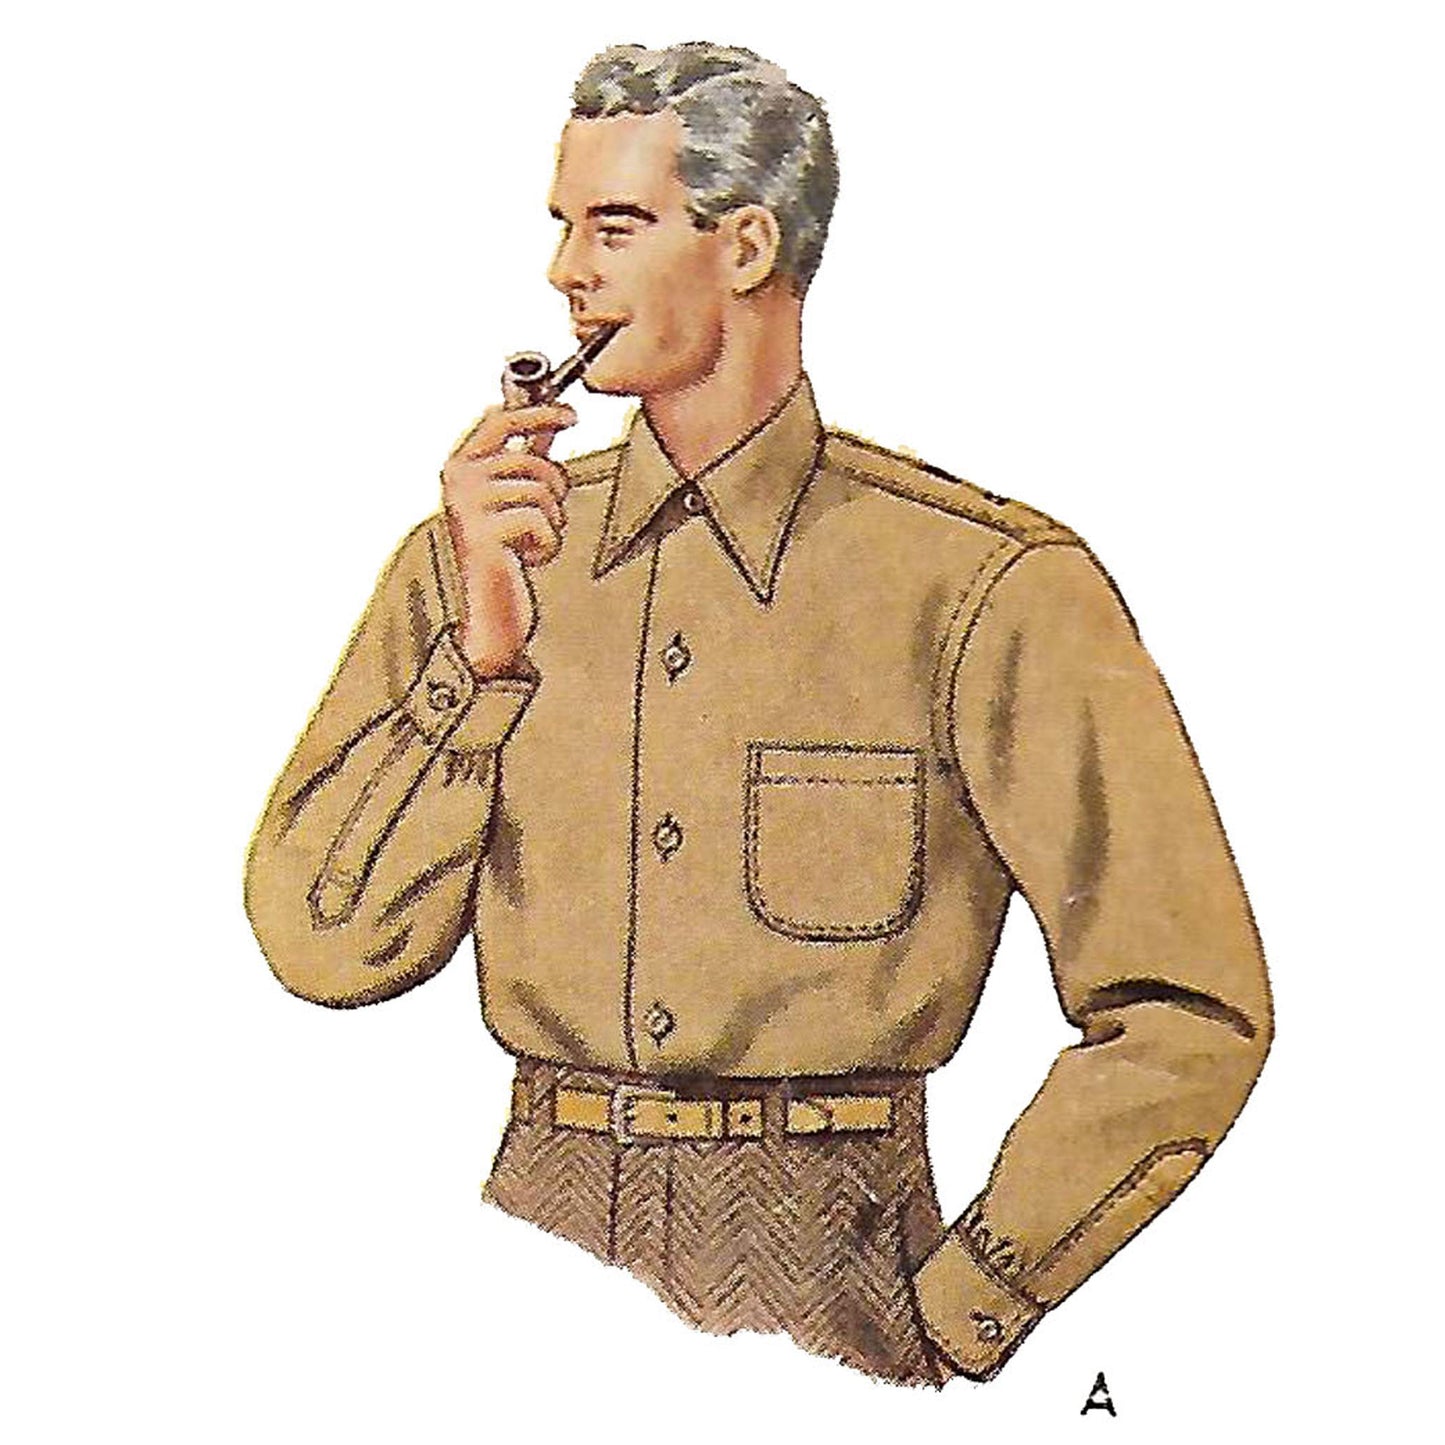 Man wearing shirt and smoking a pipe.